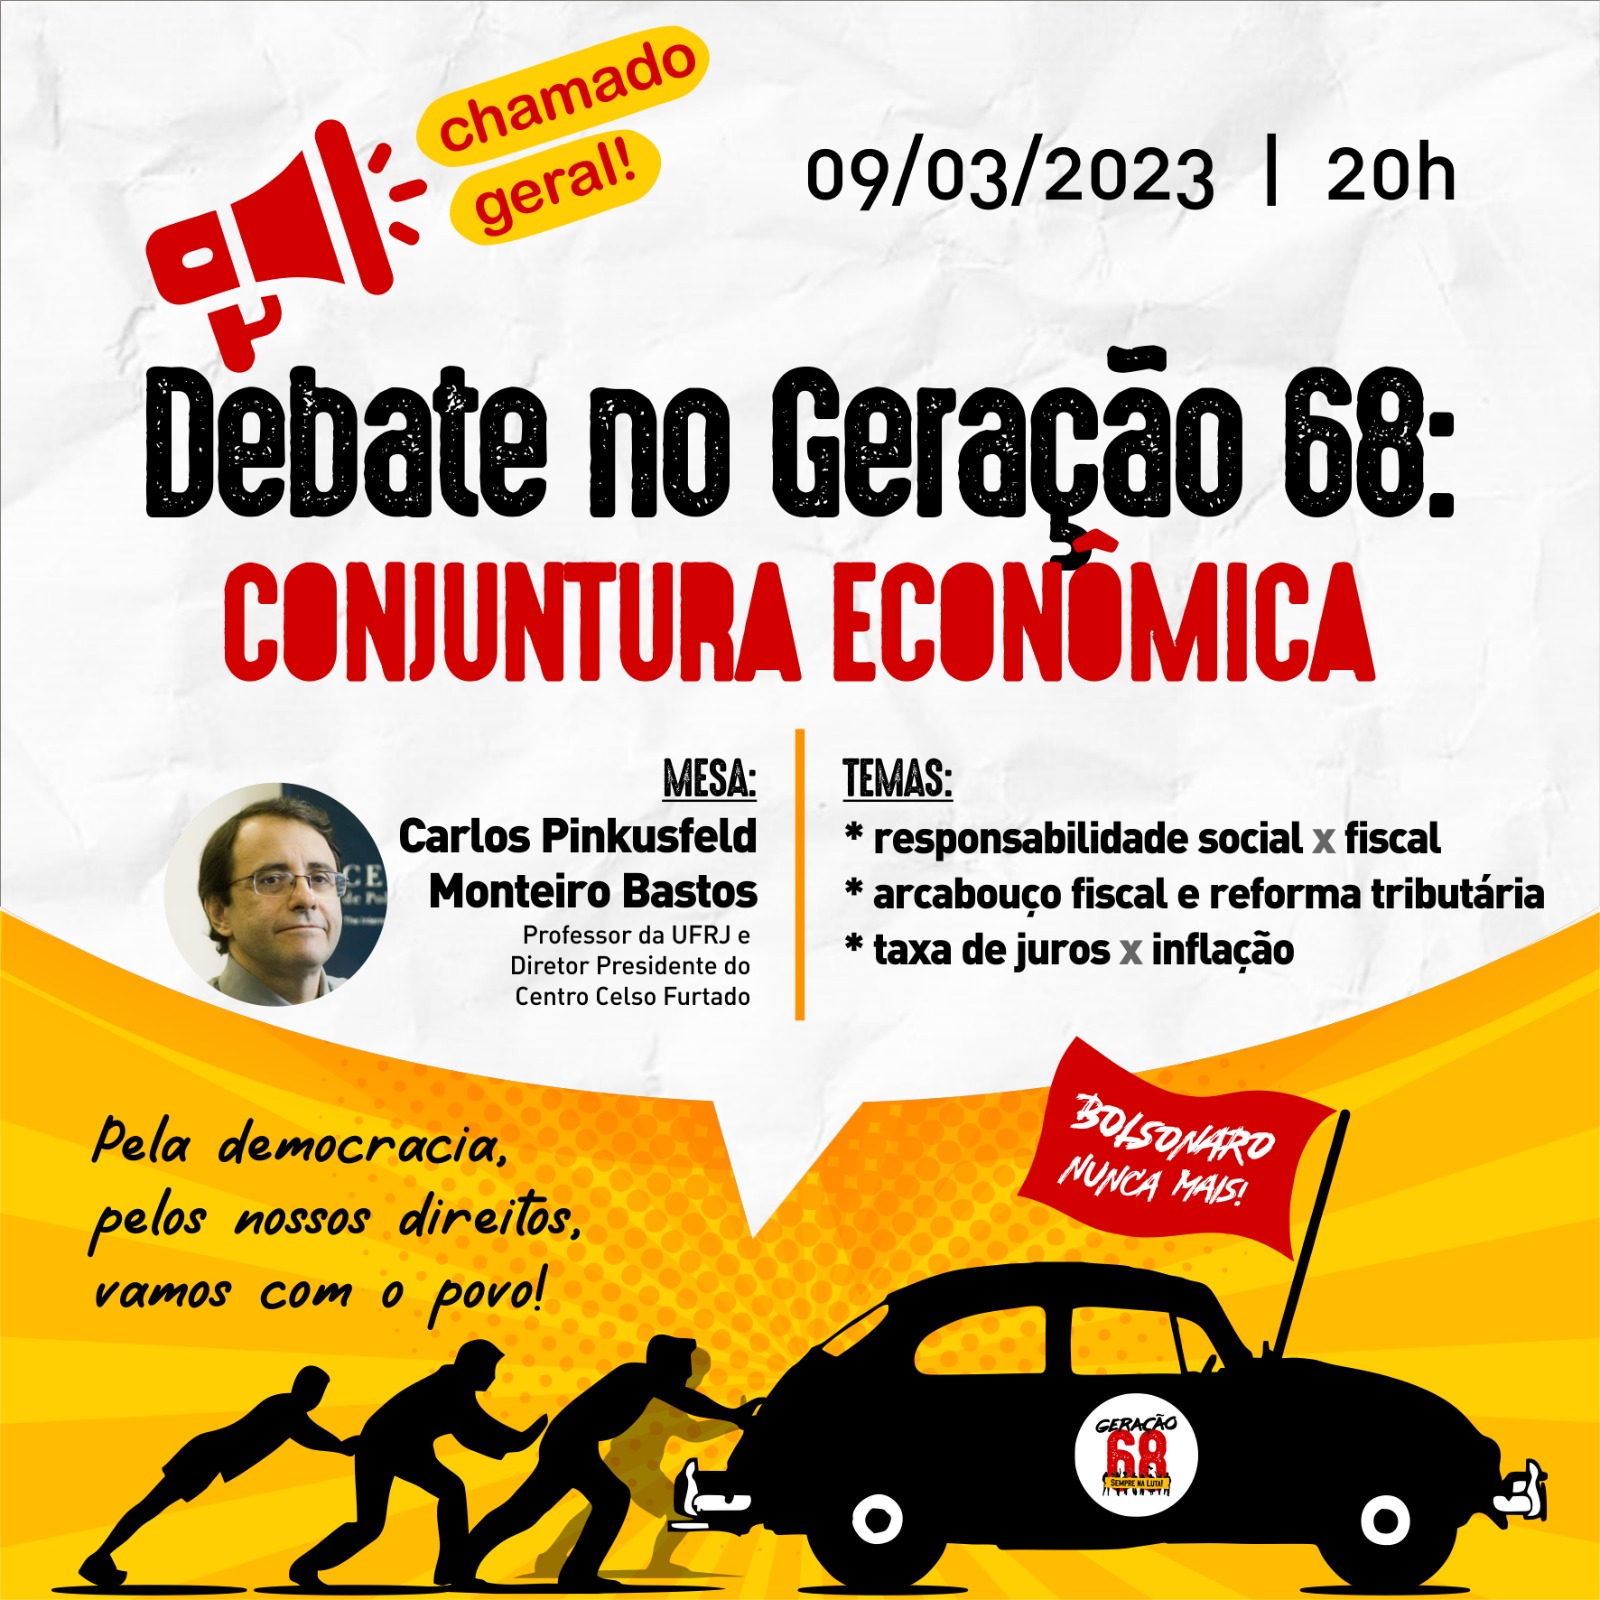 Debate no Geração 68: Conjuntura Econômica